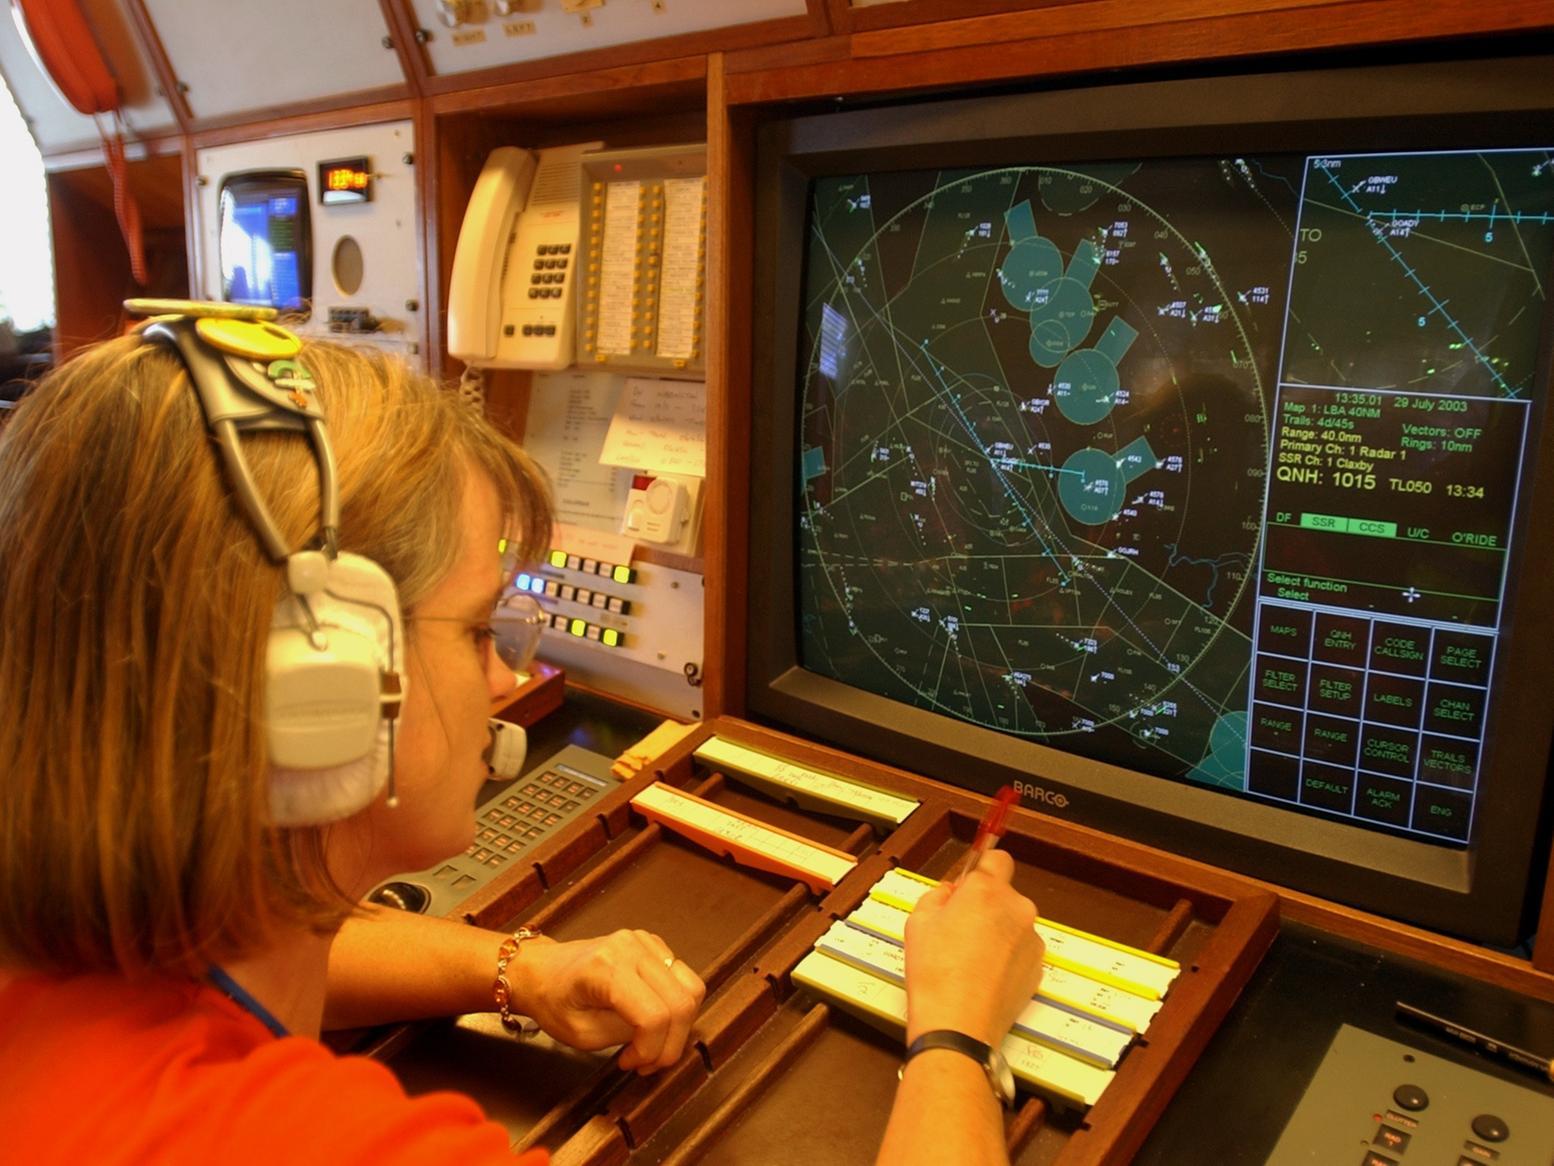 Inside the air traffic control radar room.